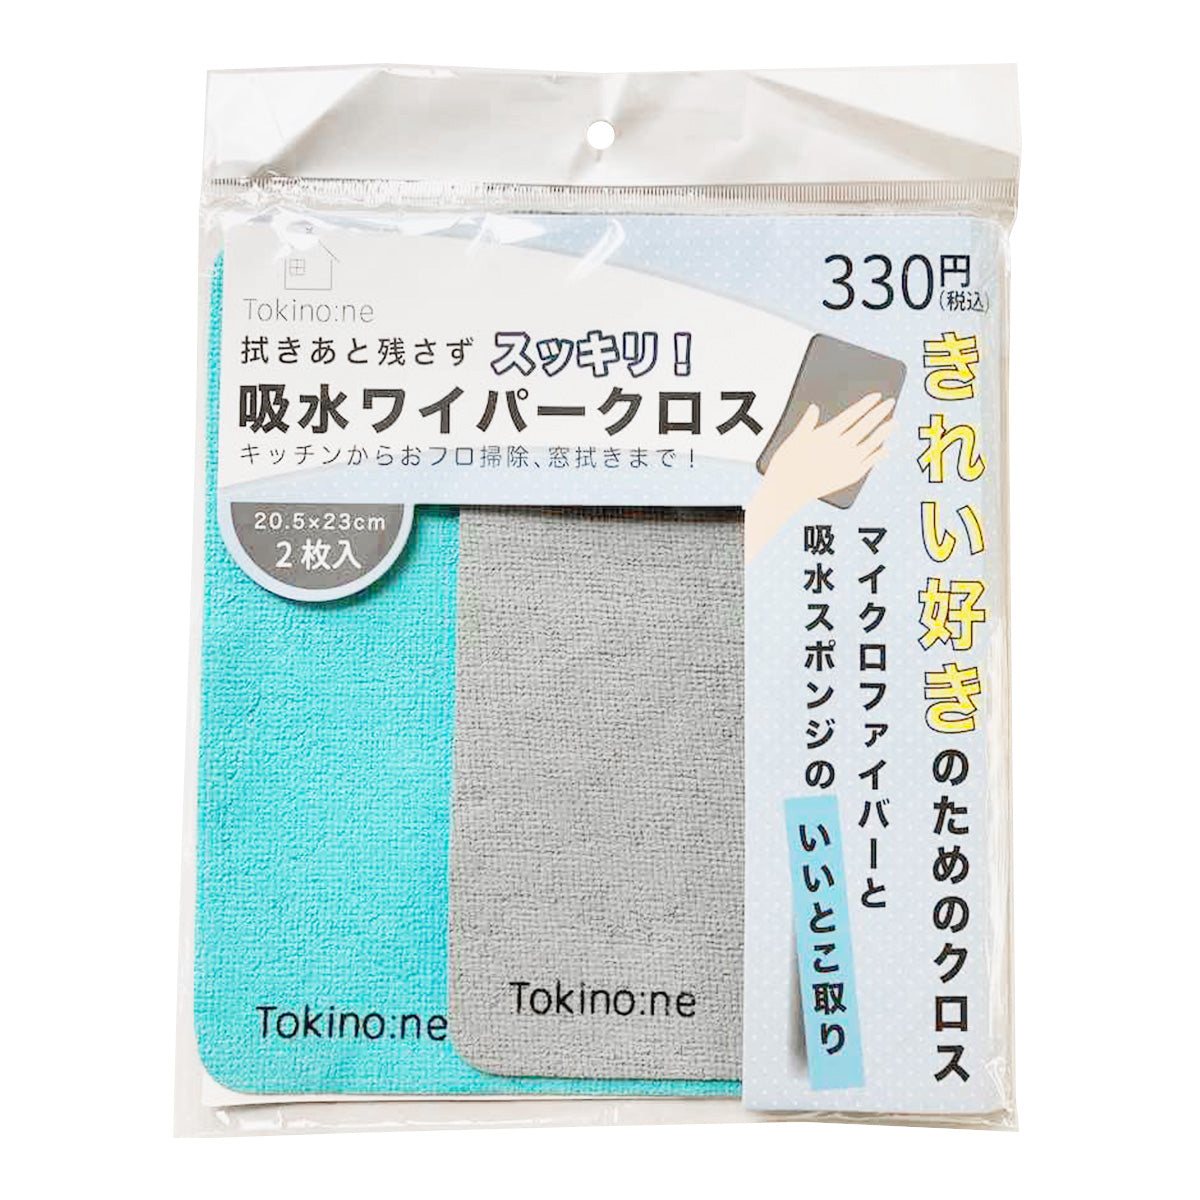 【在庫限り】ダスター クロス 雑巾 Tokinone PB.吸水ワイパークロス 2枚組 055011